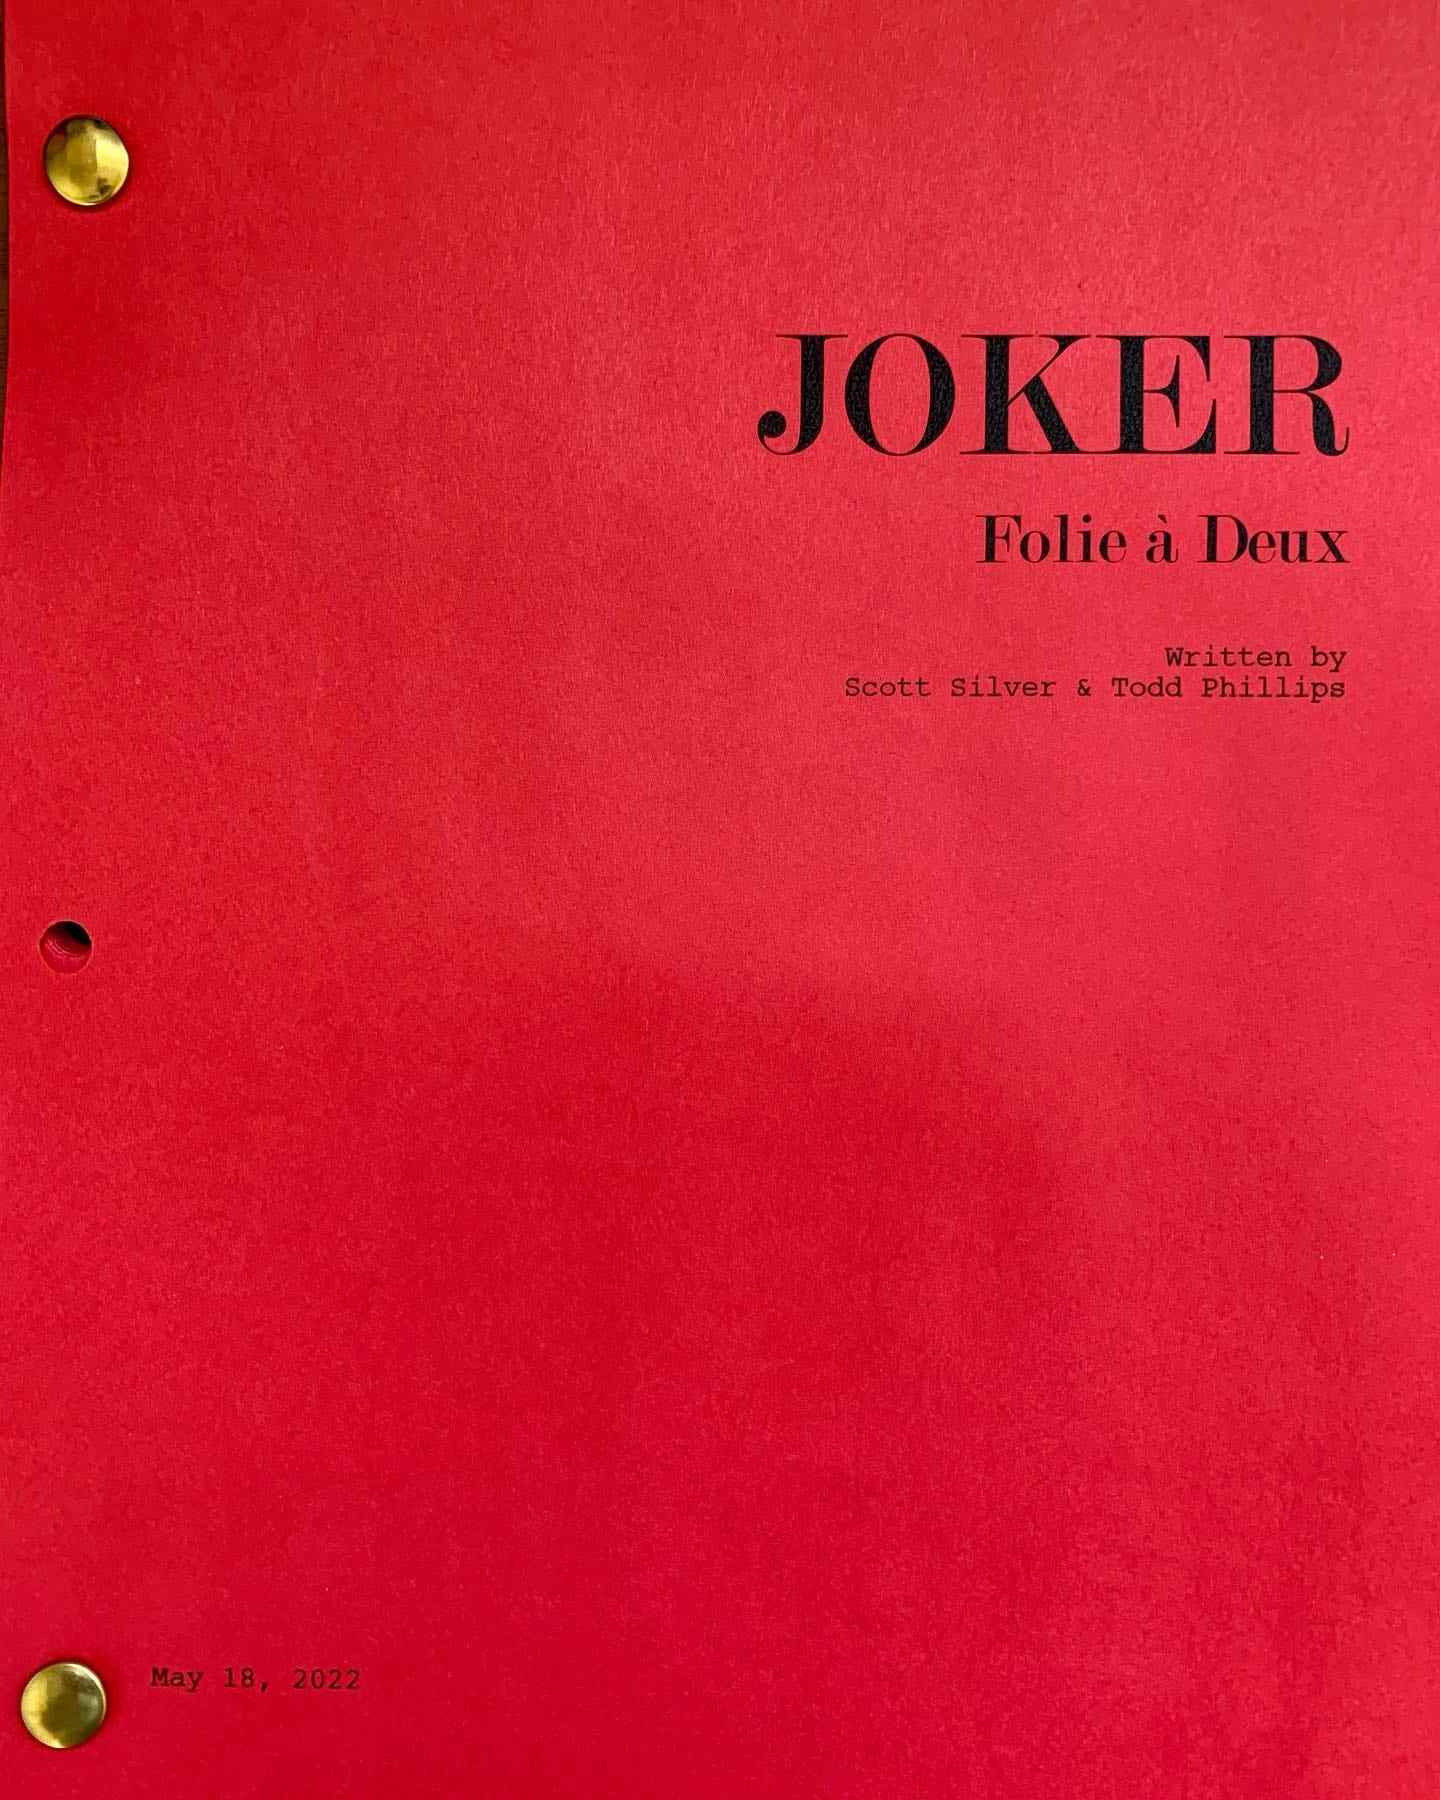 Joker: Folie à deux Joker 2 sequel script du film Todd Phillips Scott Silver écrivains Joaquin Phoenix lit comme acteur